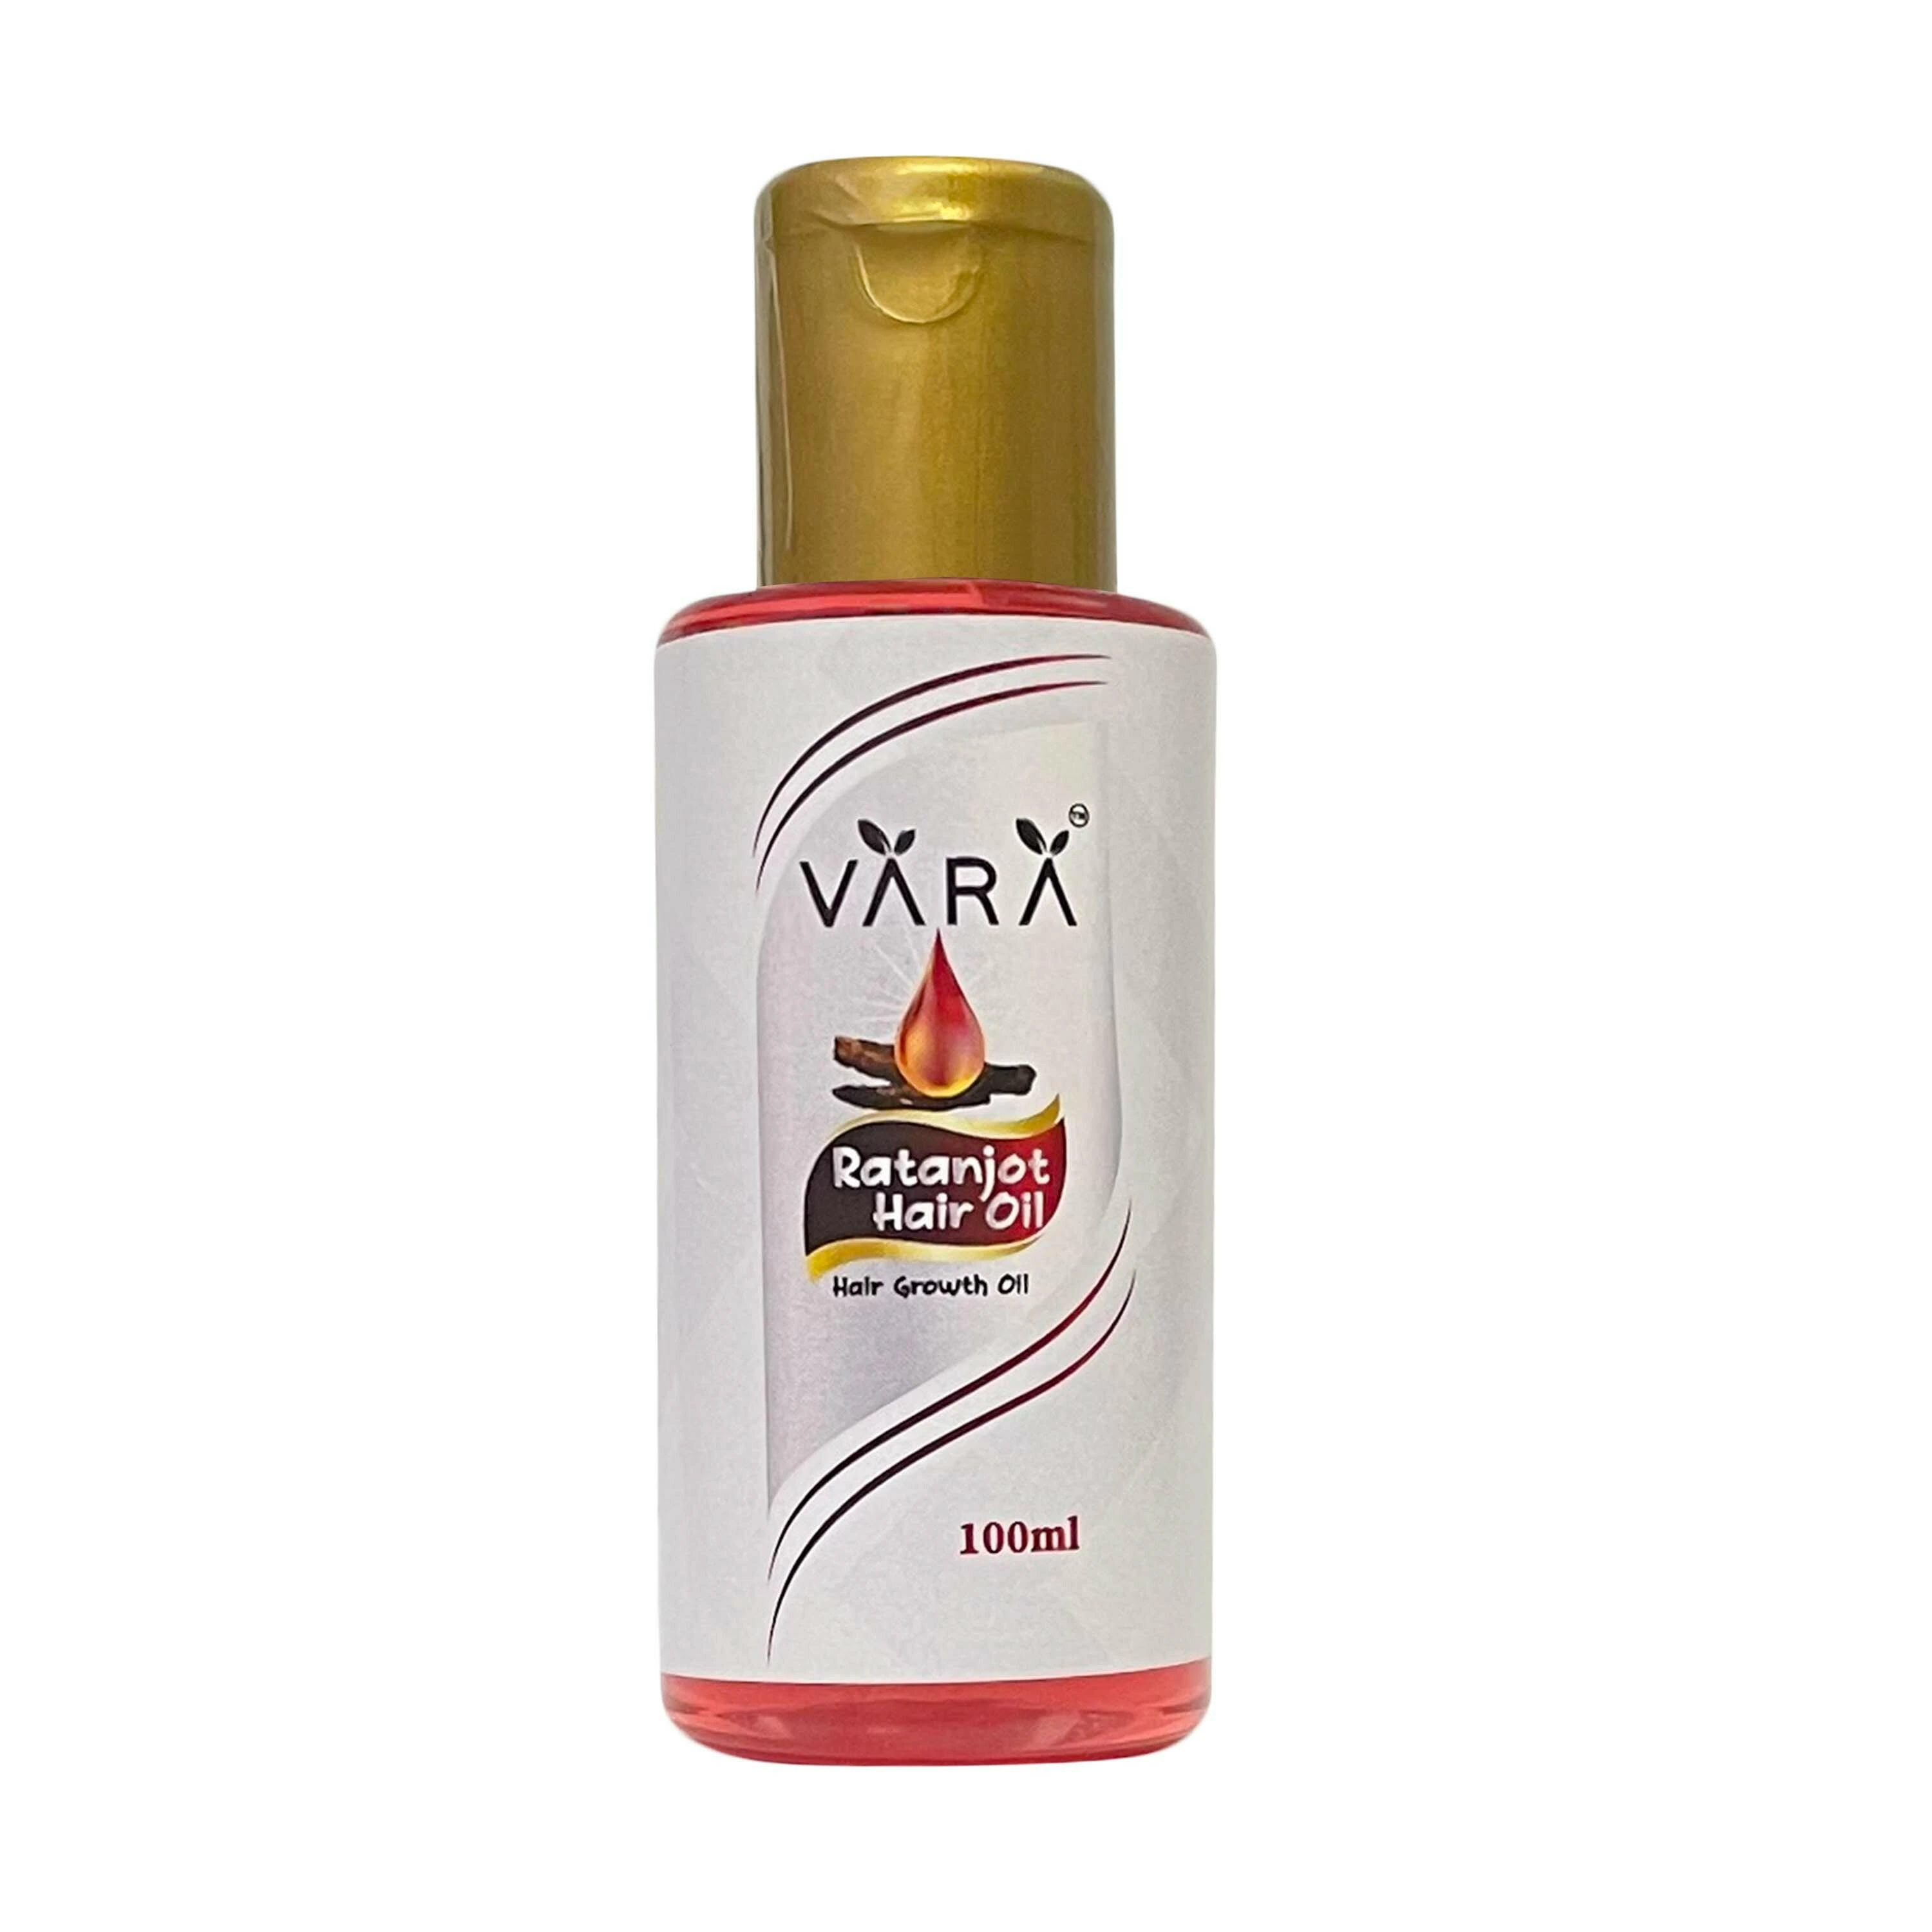 Vara Hibiscus & Ratanjot Hair Oil Combo for Hair growth - 100% Natural Each  100ml - JioMart